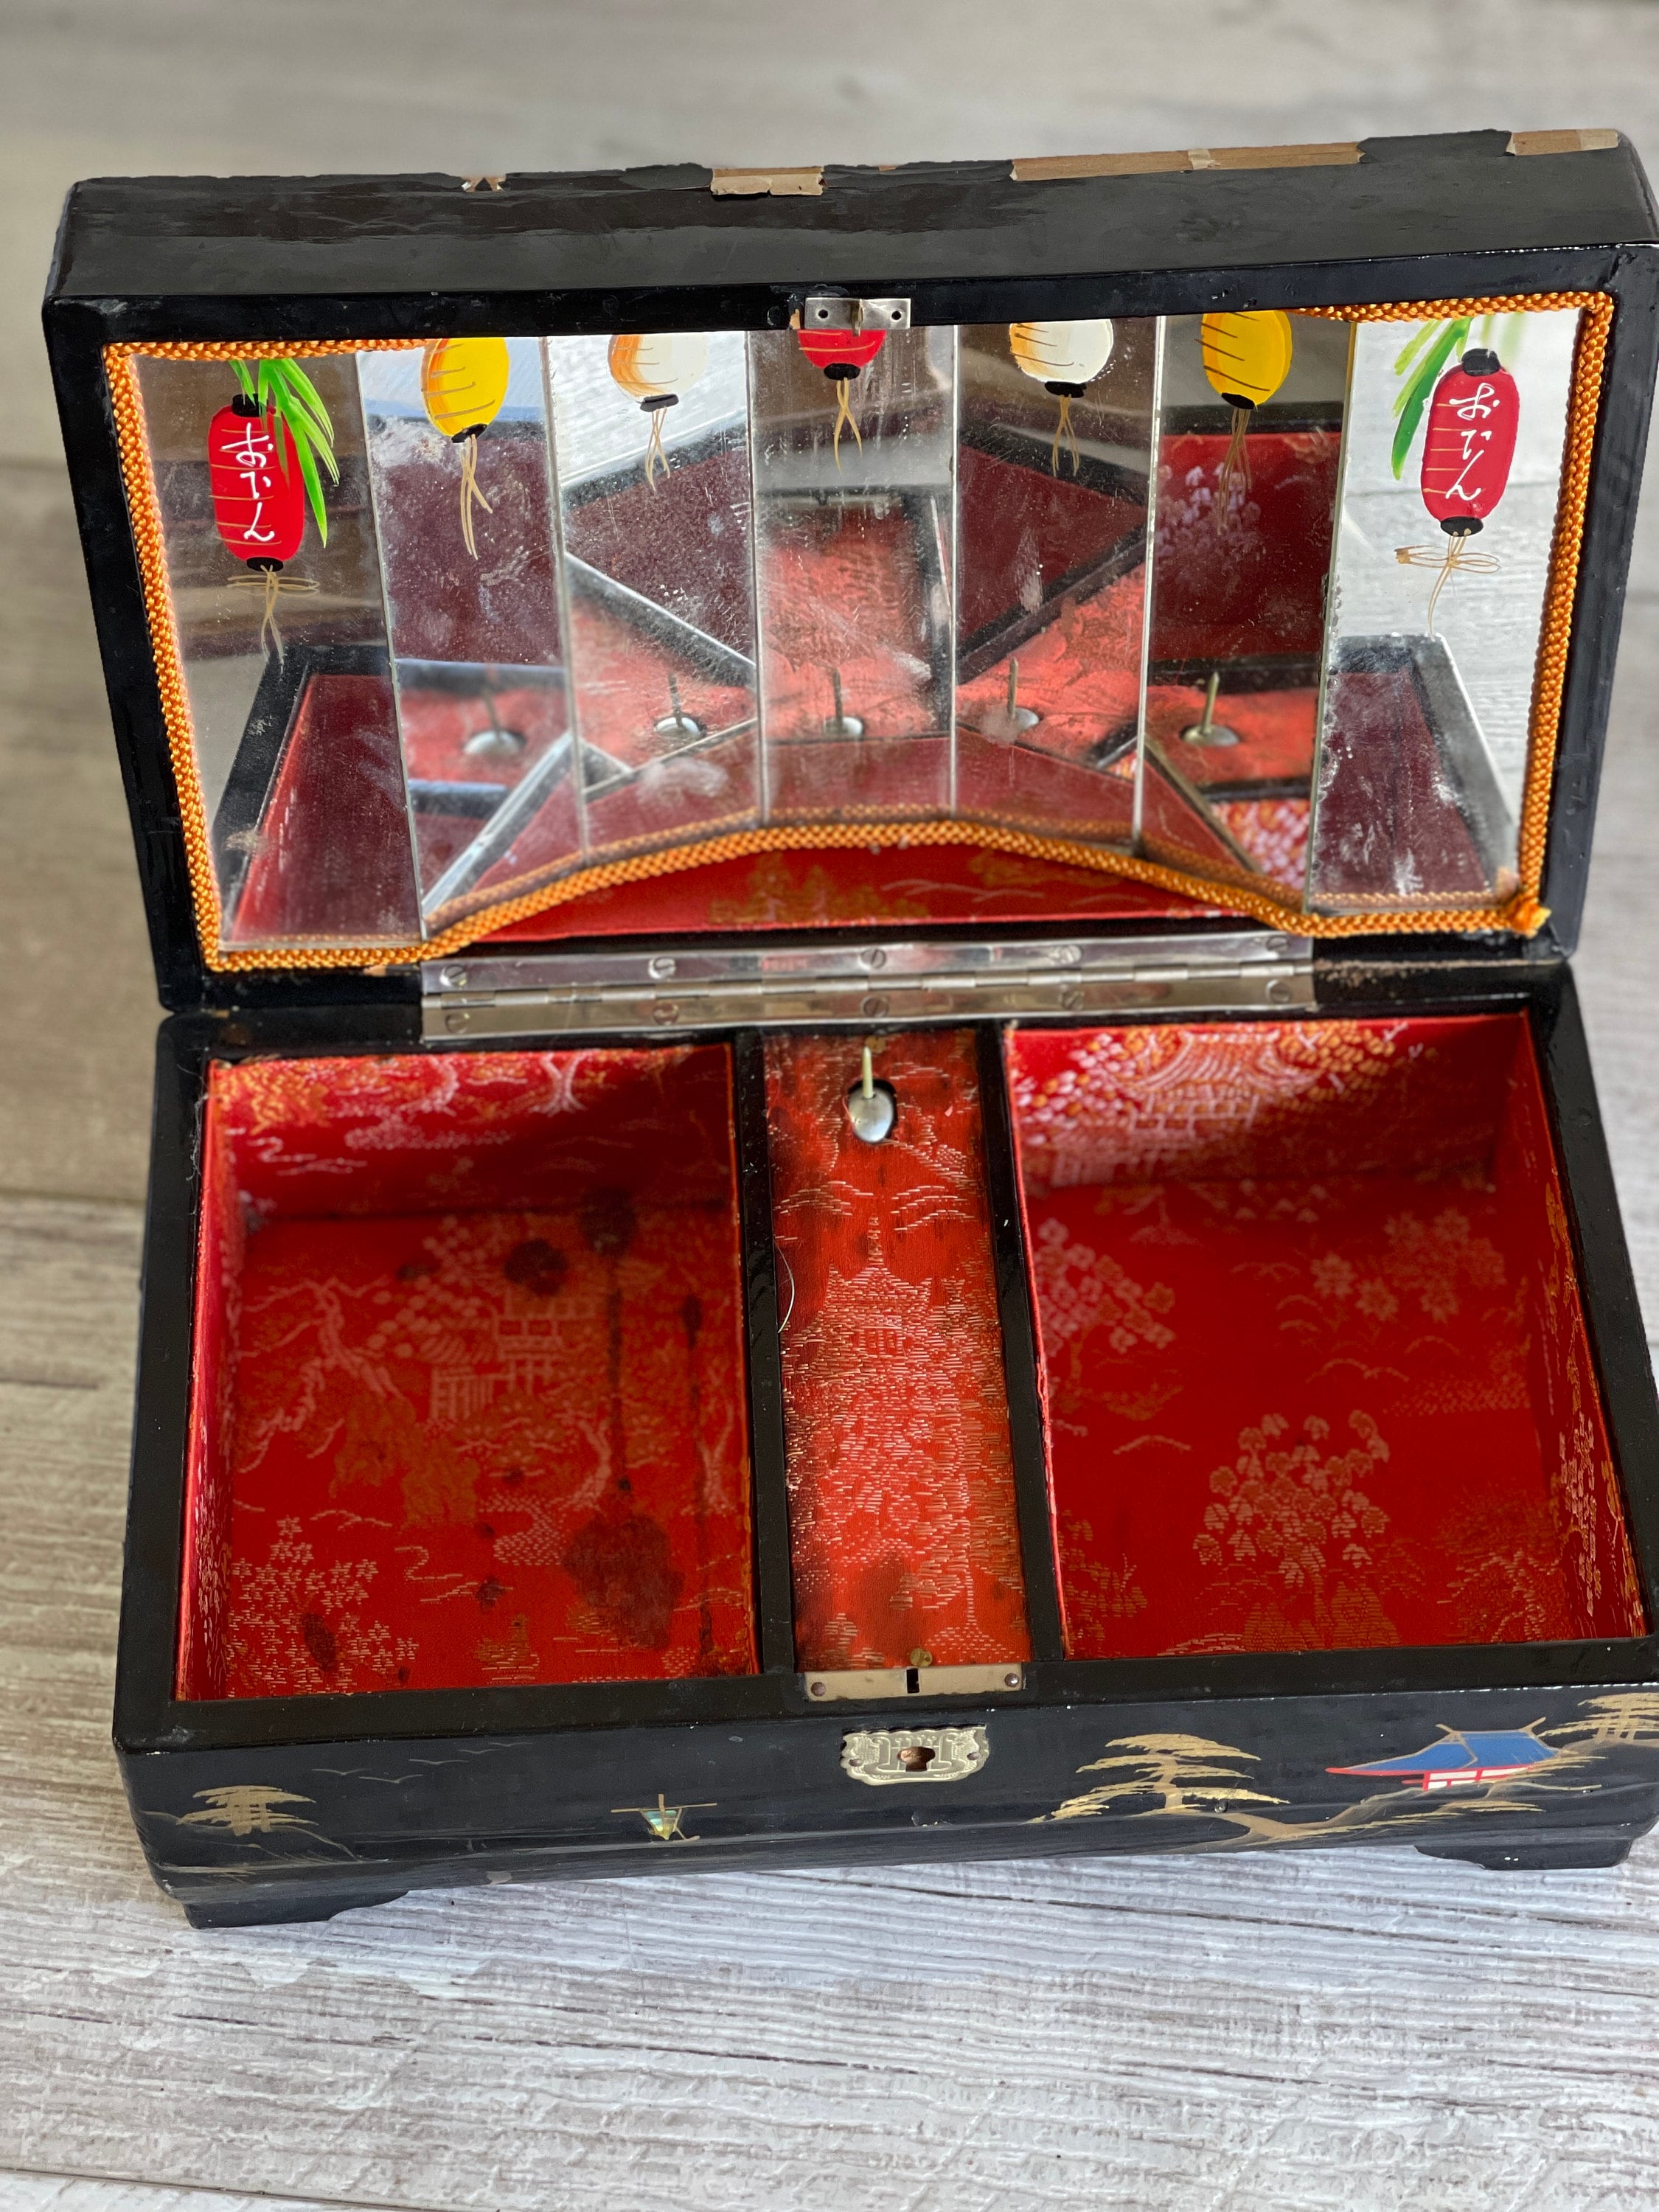 Small Laquer Art Mini Jewelry Box - Red I Lauqer art Craft